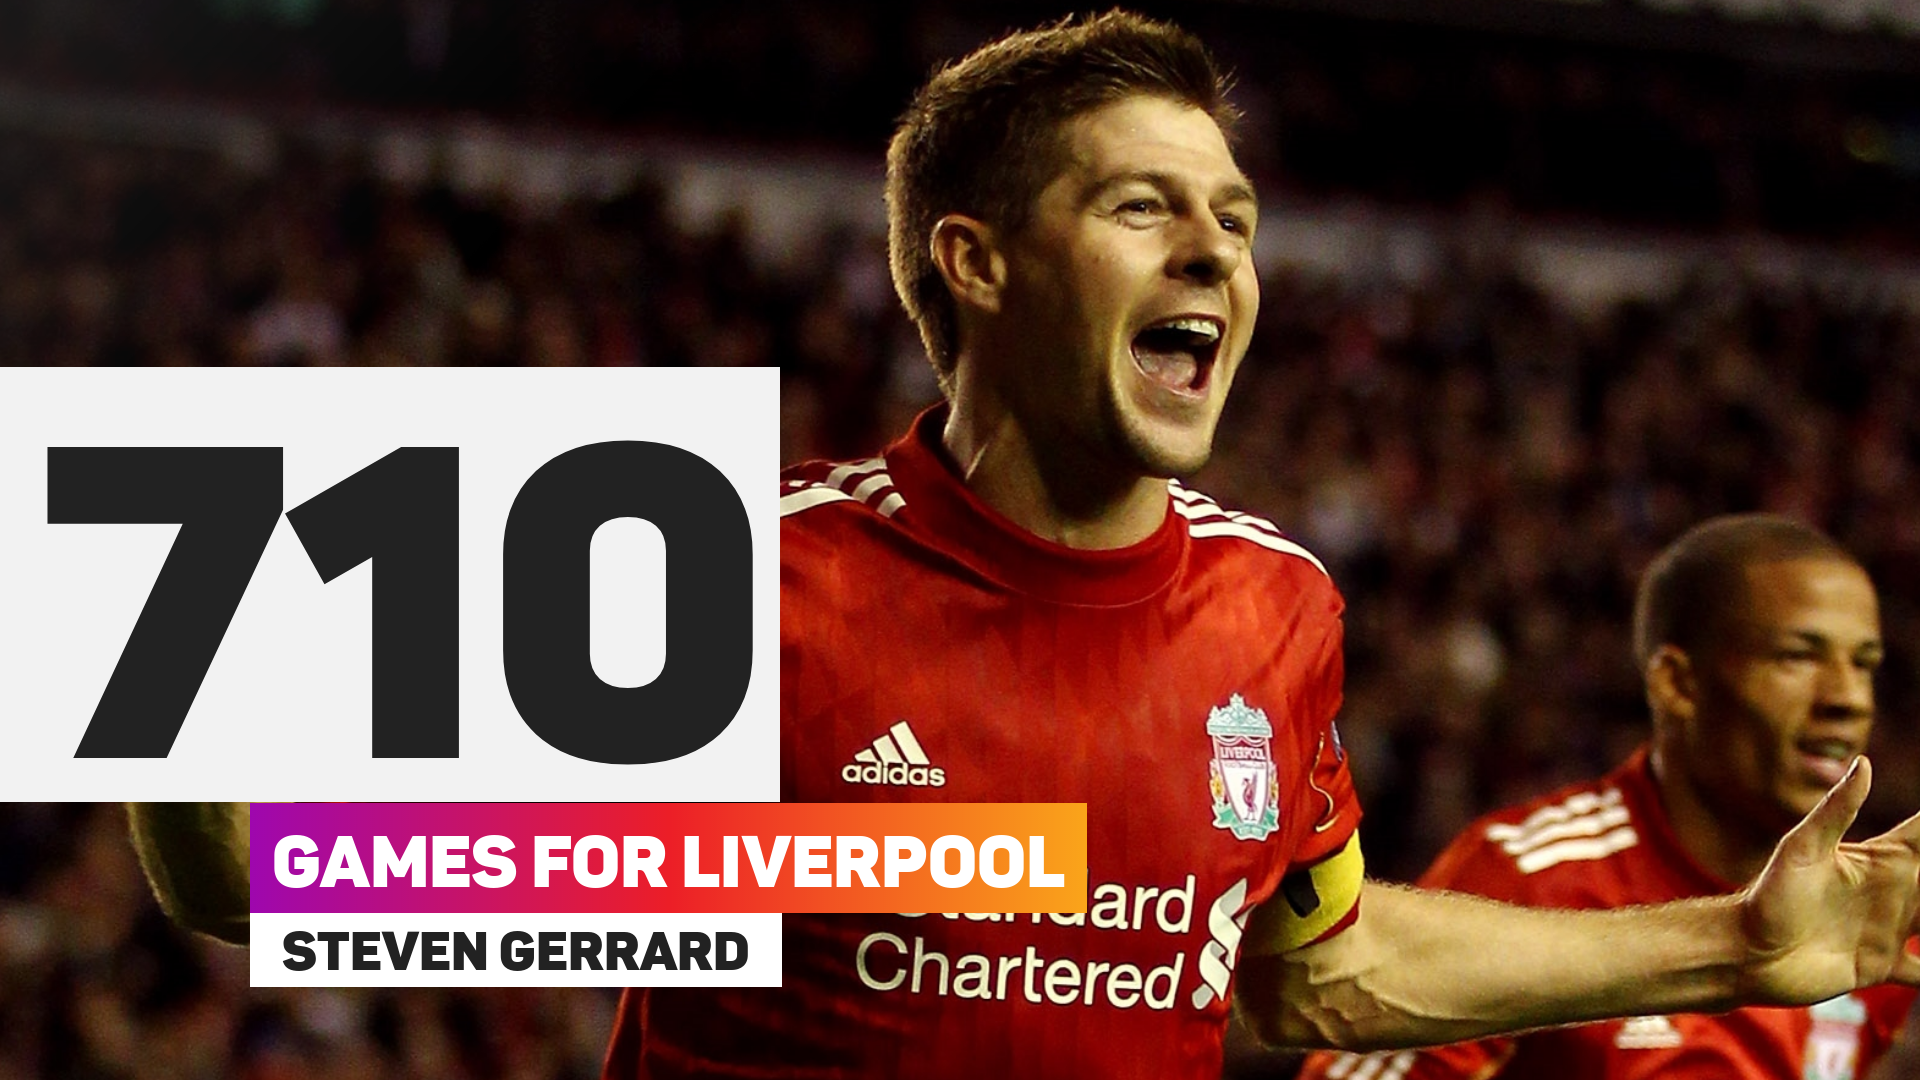 Steven Gerrard is a modern day Liverpool legend